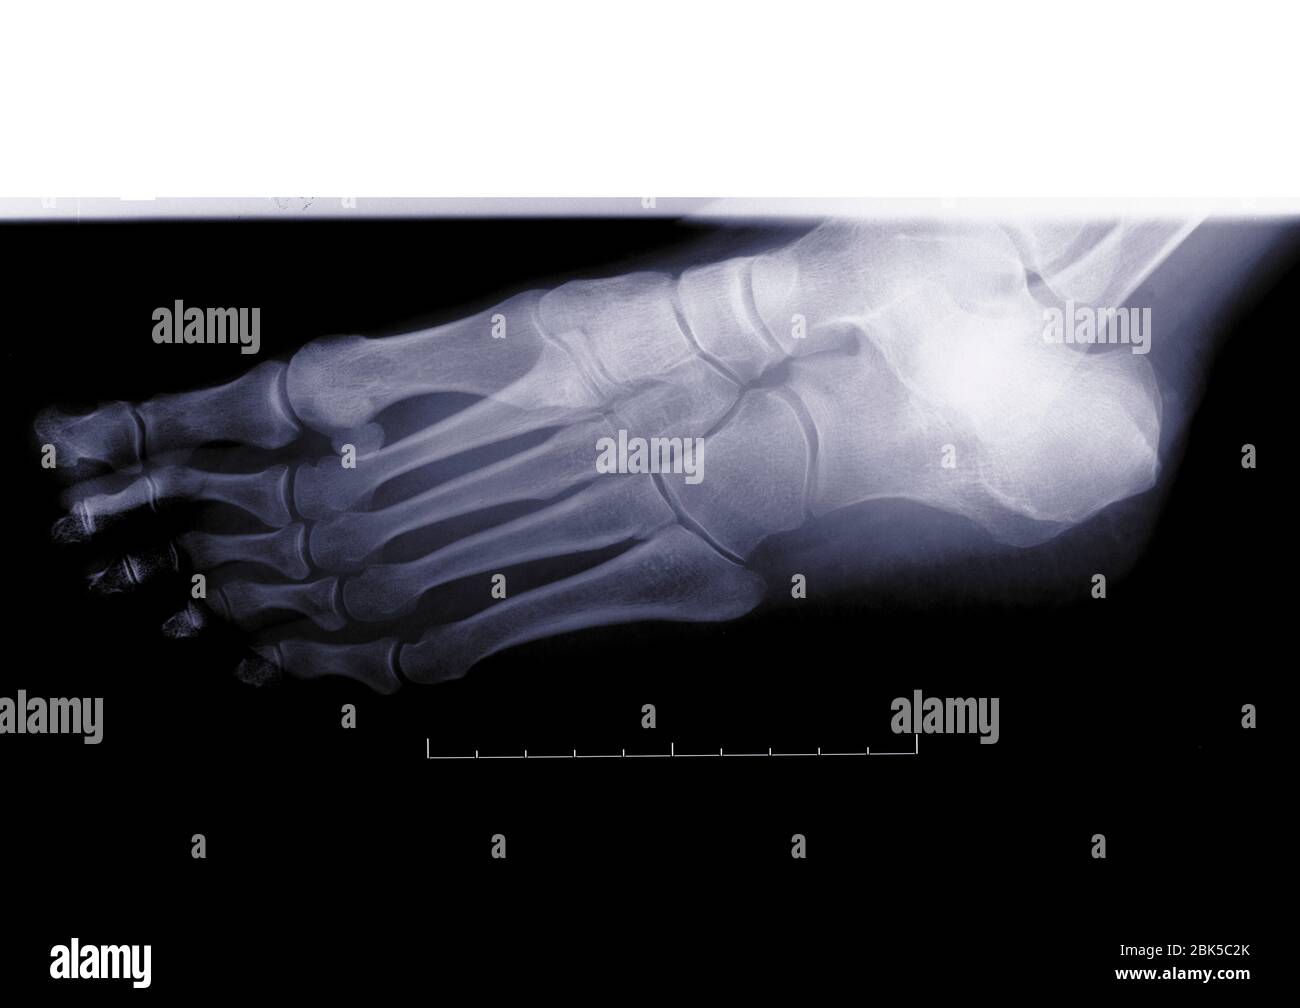 Foot, X-ray. Stock Photo